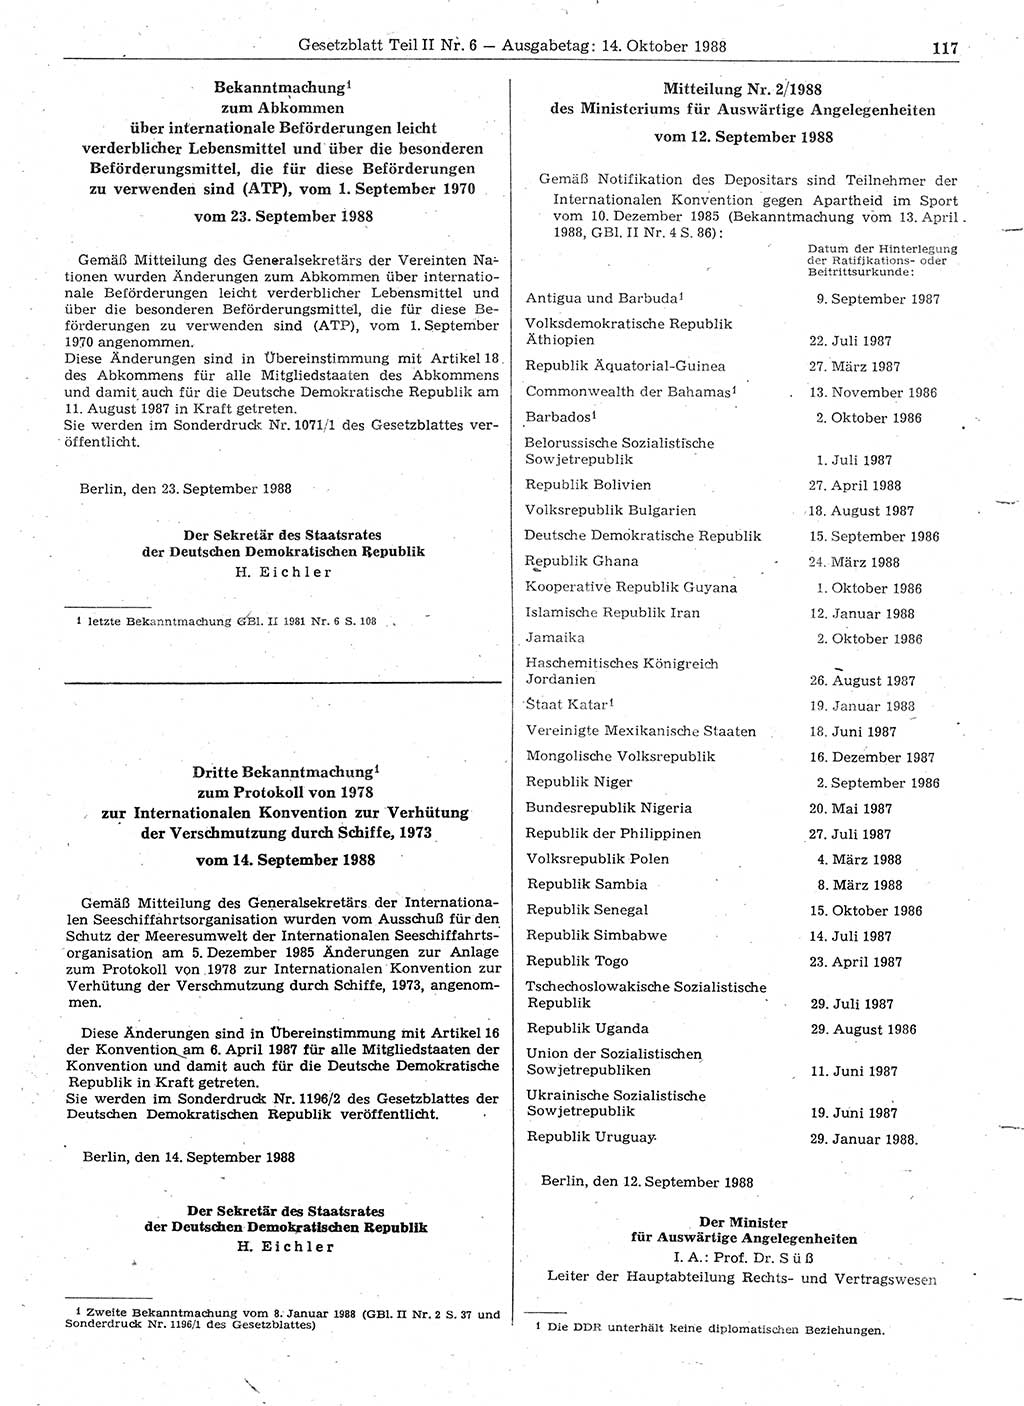 Gesetzblatt (GBl.) der Deutschen Demokratischen Republik (DDR) Teil ⅠⅠ 1988, Seite 117 (GBl. DDR ⅠⅠ 1988, S. 117)